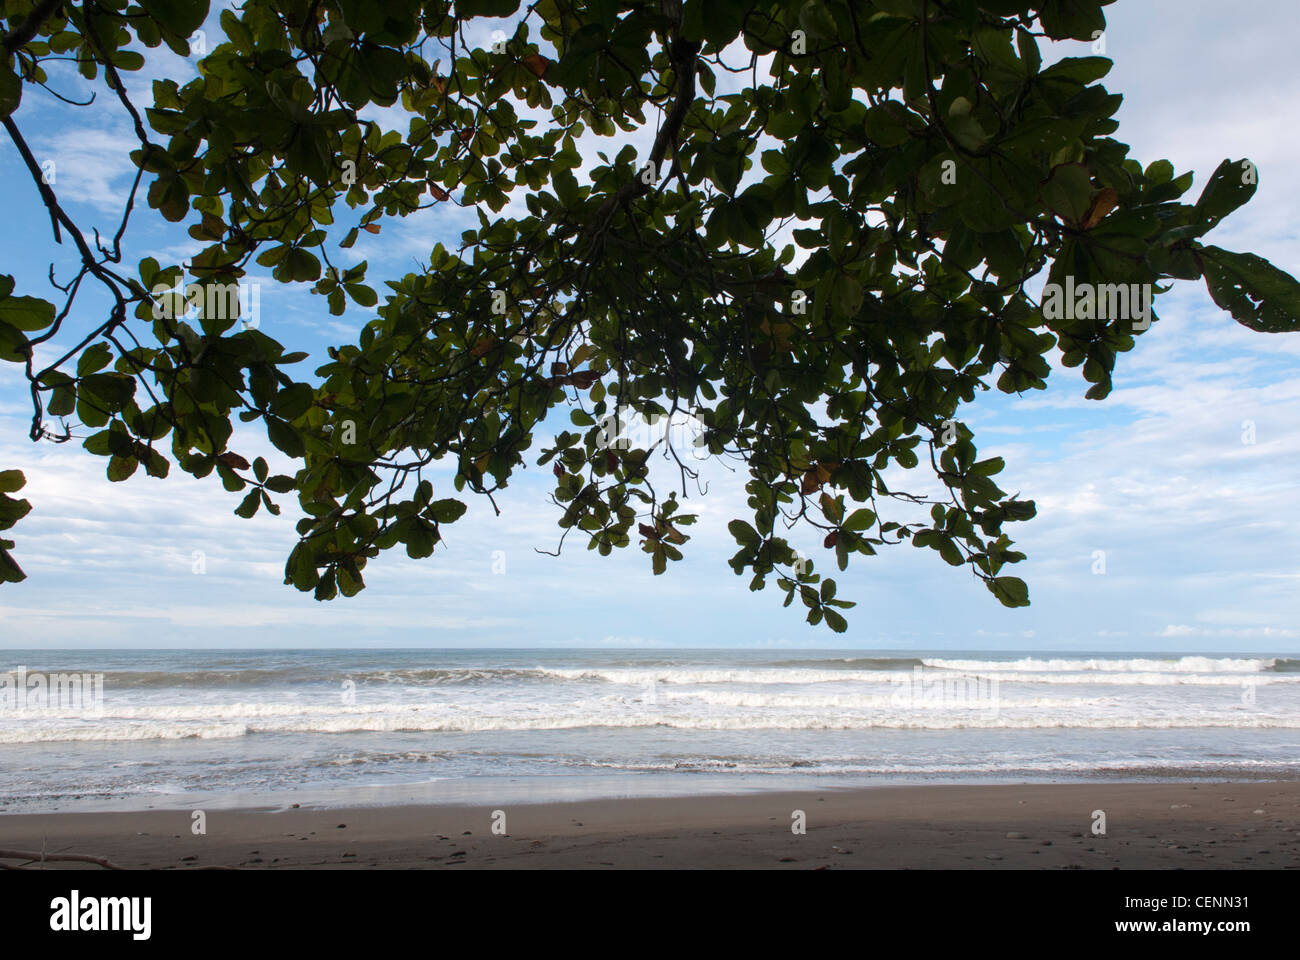 Baru Beach, la côte du Pacifique, le Costa Rica. Banque D'Images